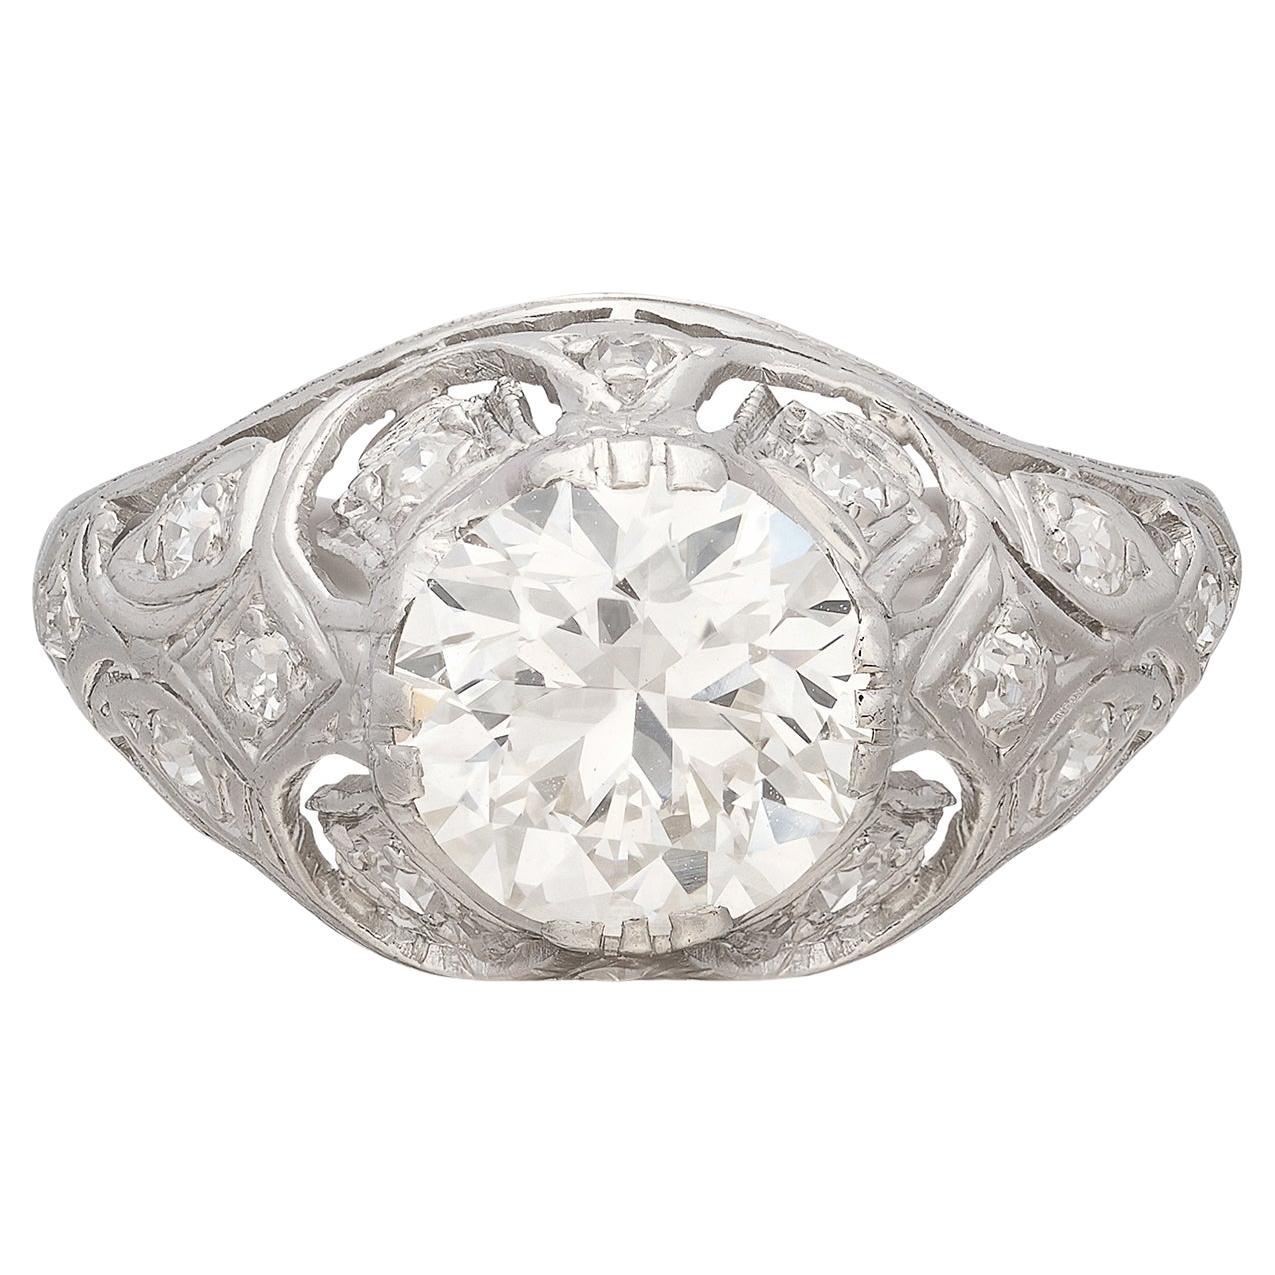 Antique 1.72-cts Diamond & Platinum Engagement Ring